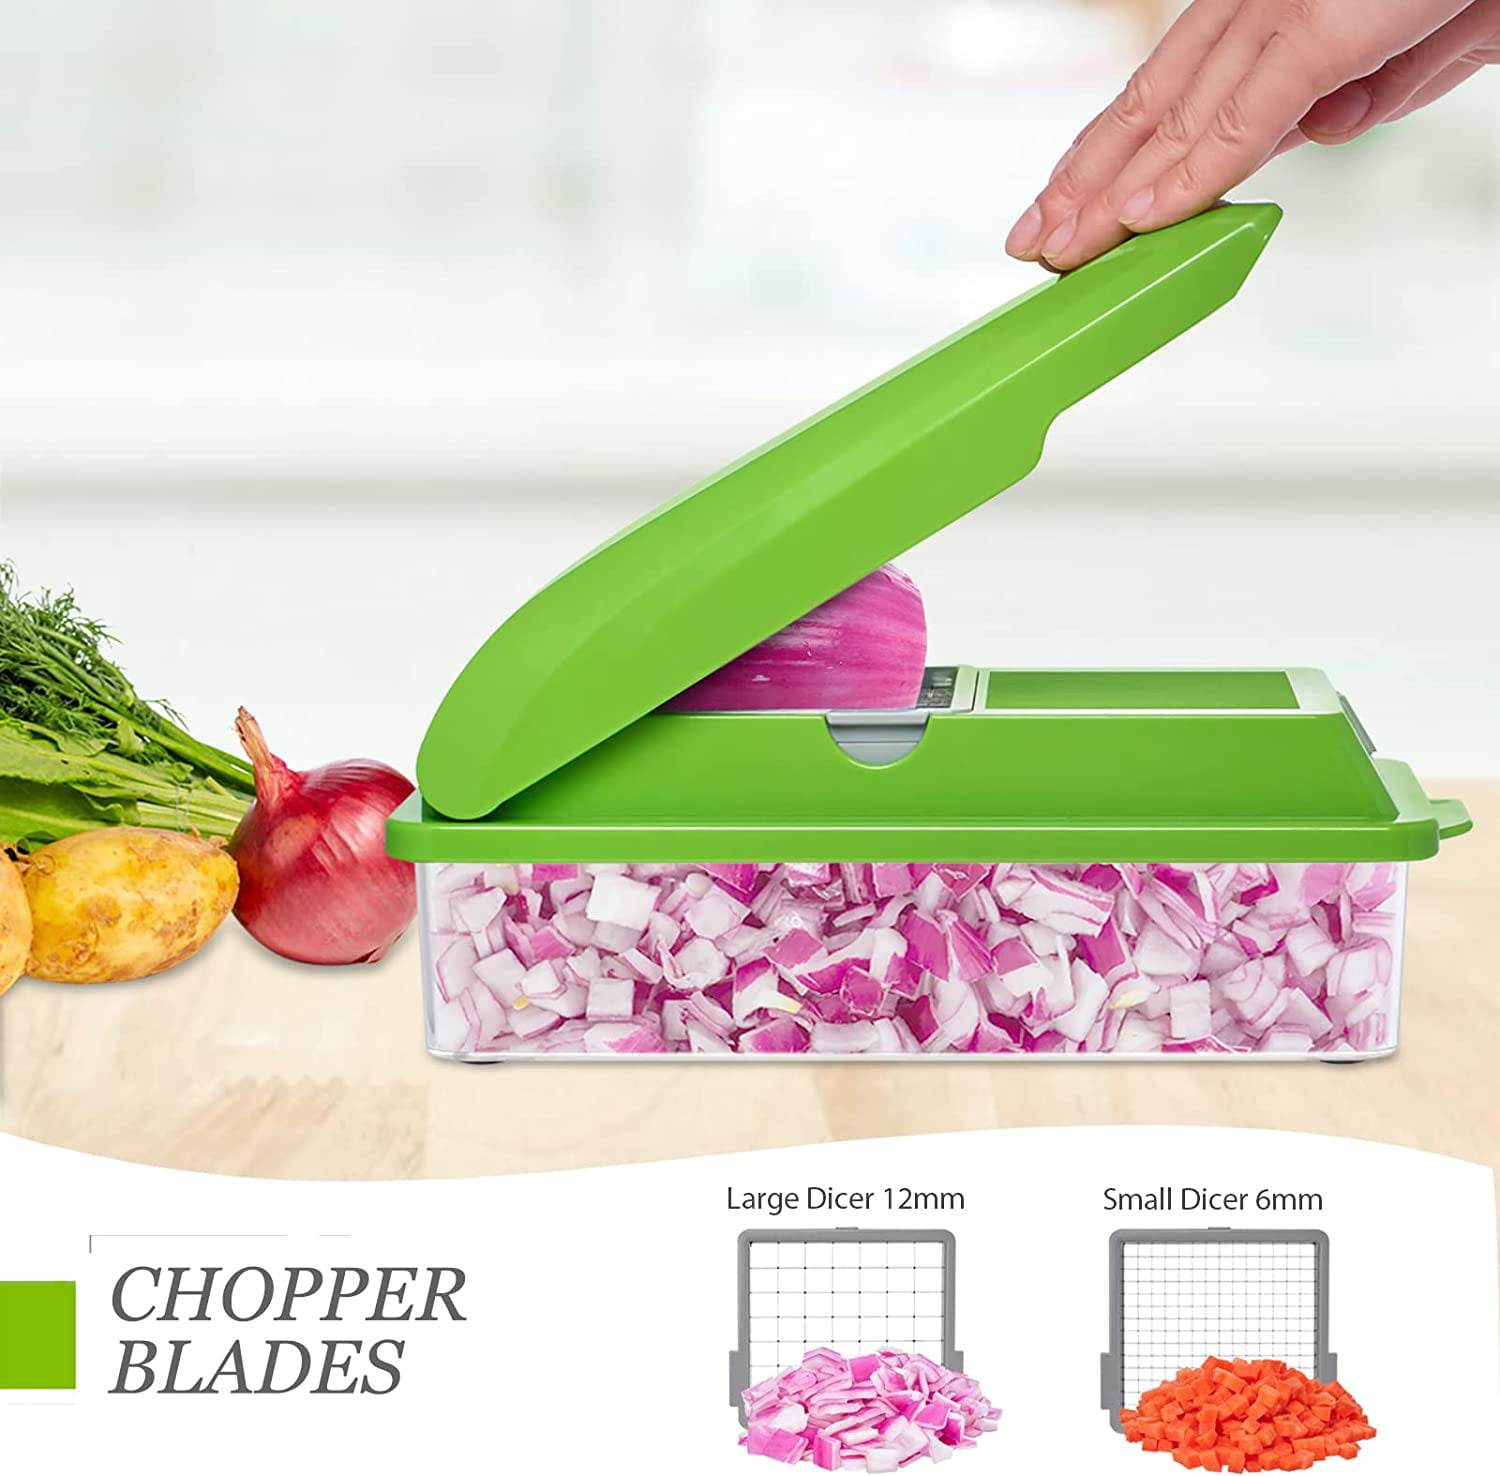 Adofi Pro Vegetable Chopper.8 Blade Vegetable Slicer.Food Chopper Slicer  Dicer Cutter - Onion Chopper with Container - Colander Basket - Gray 